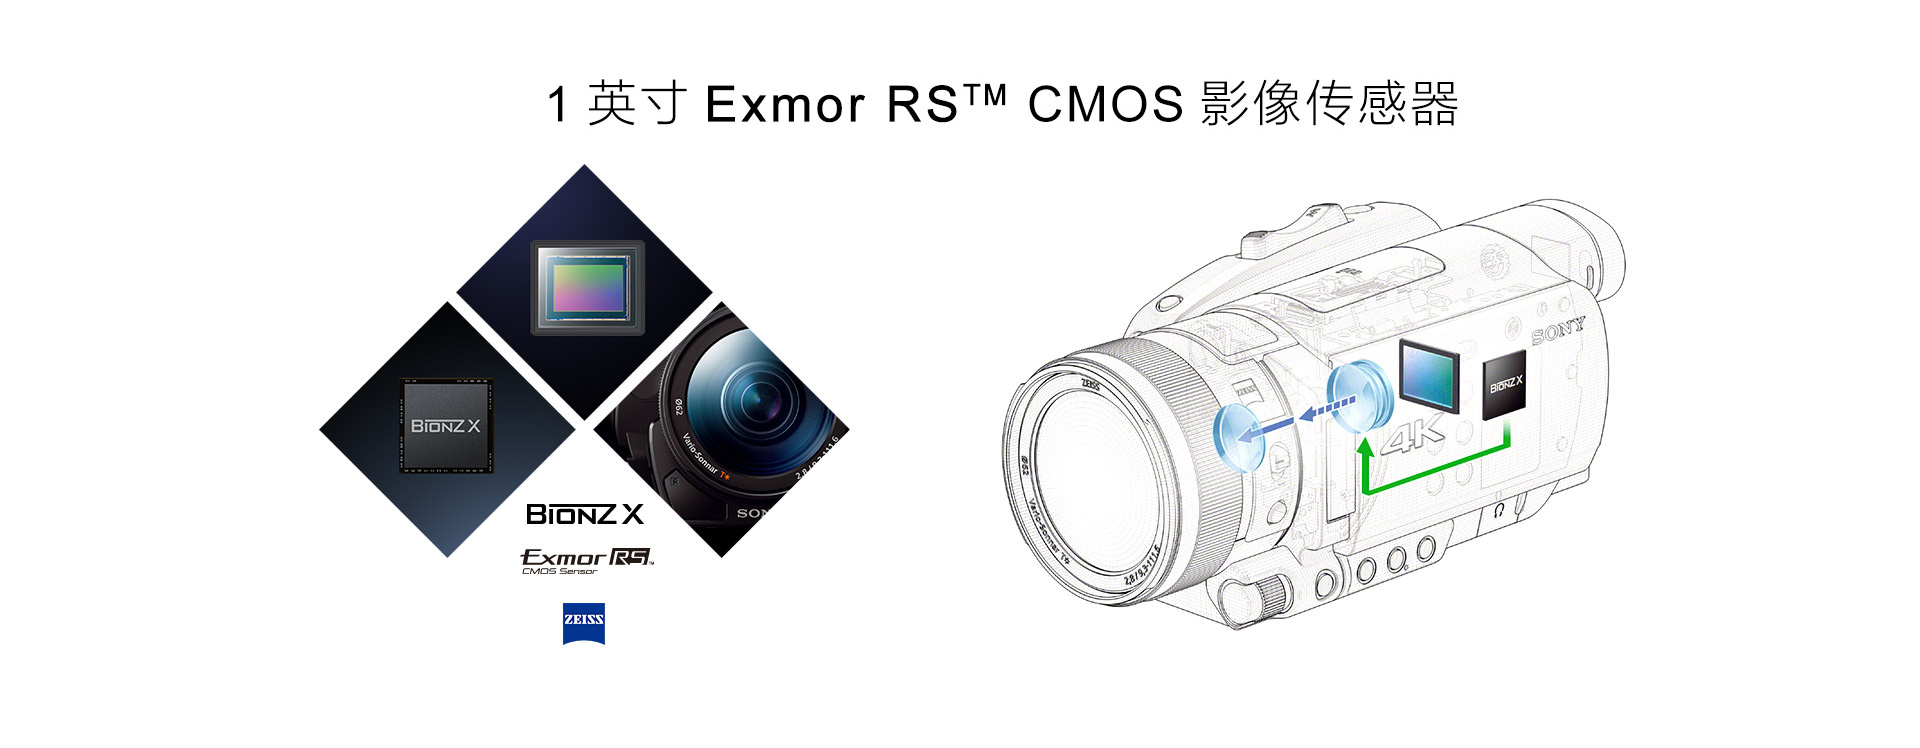 1英寸Exmor RS™ CMOS影像传感器、BIONZ X影像处理器和蔡司Vario-Sonnar T*镜头效果图